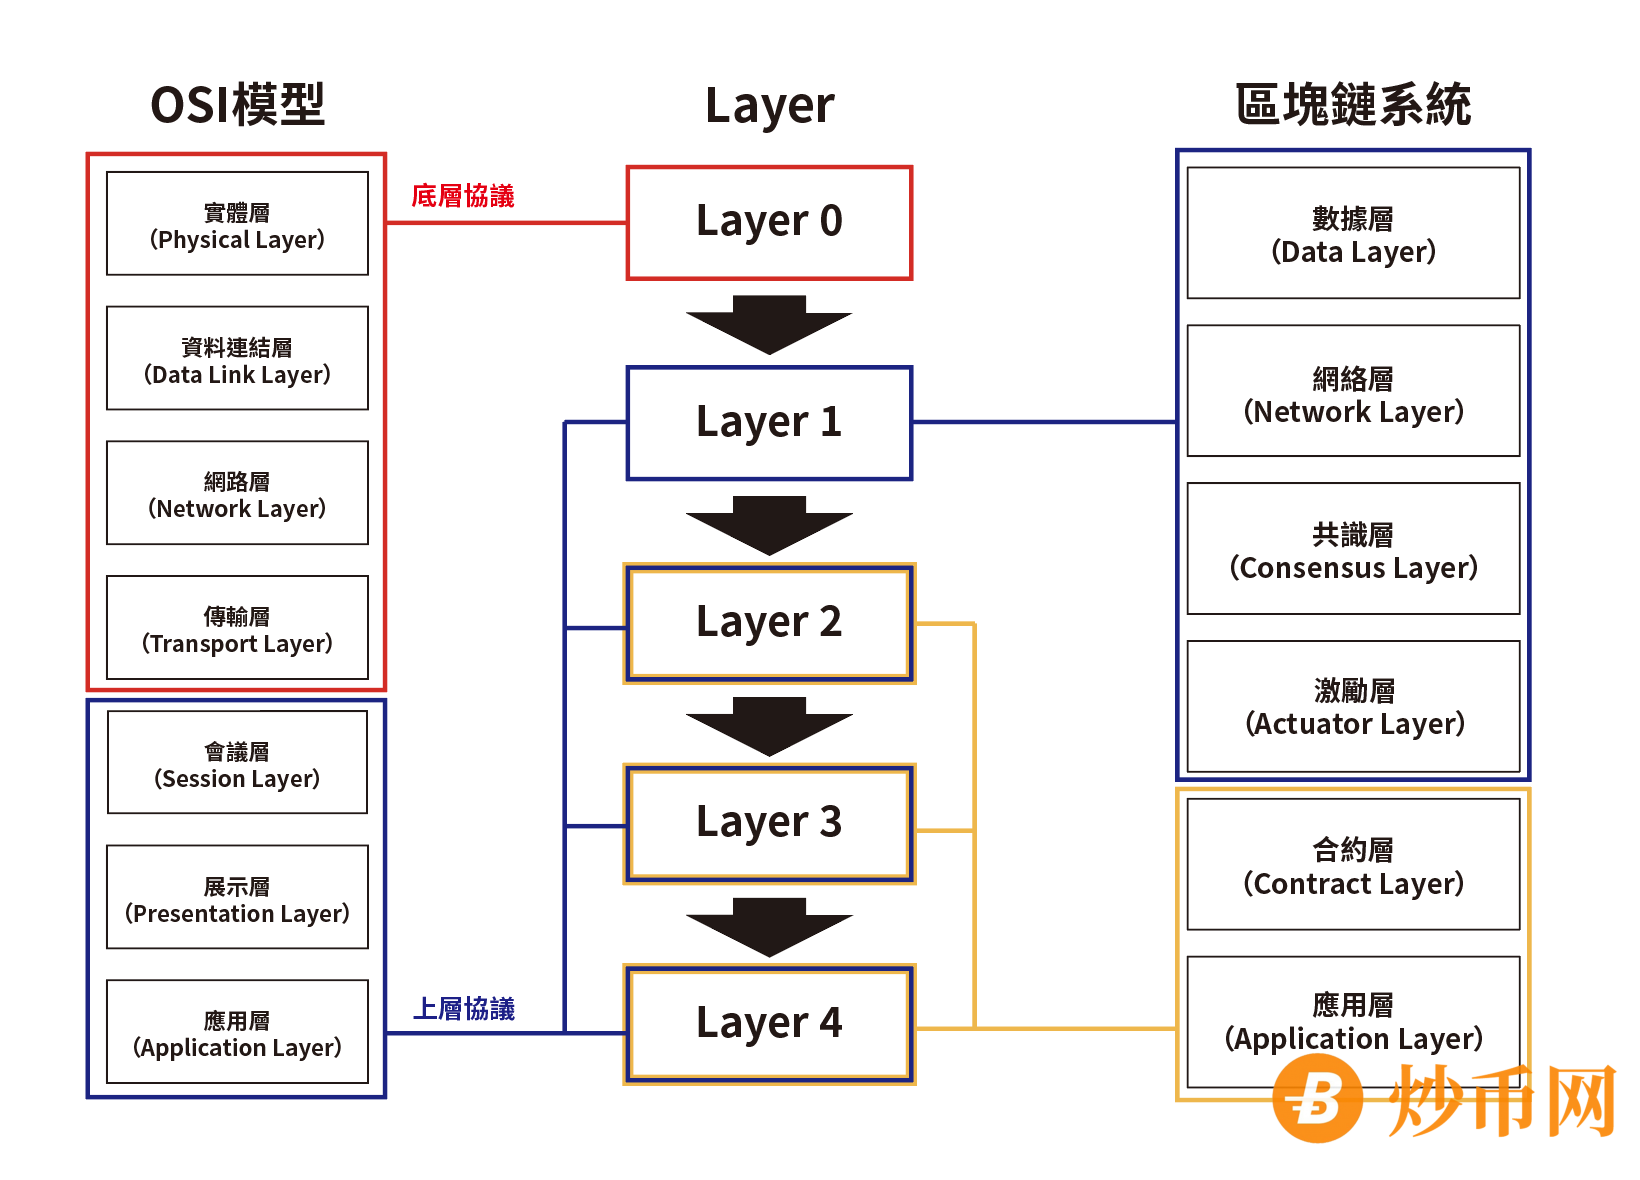 以太坊区块链的Layer是什么？解读介绍L1、L2、L3和L4的区别与案例